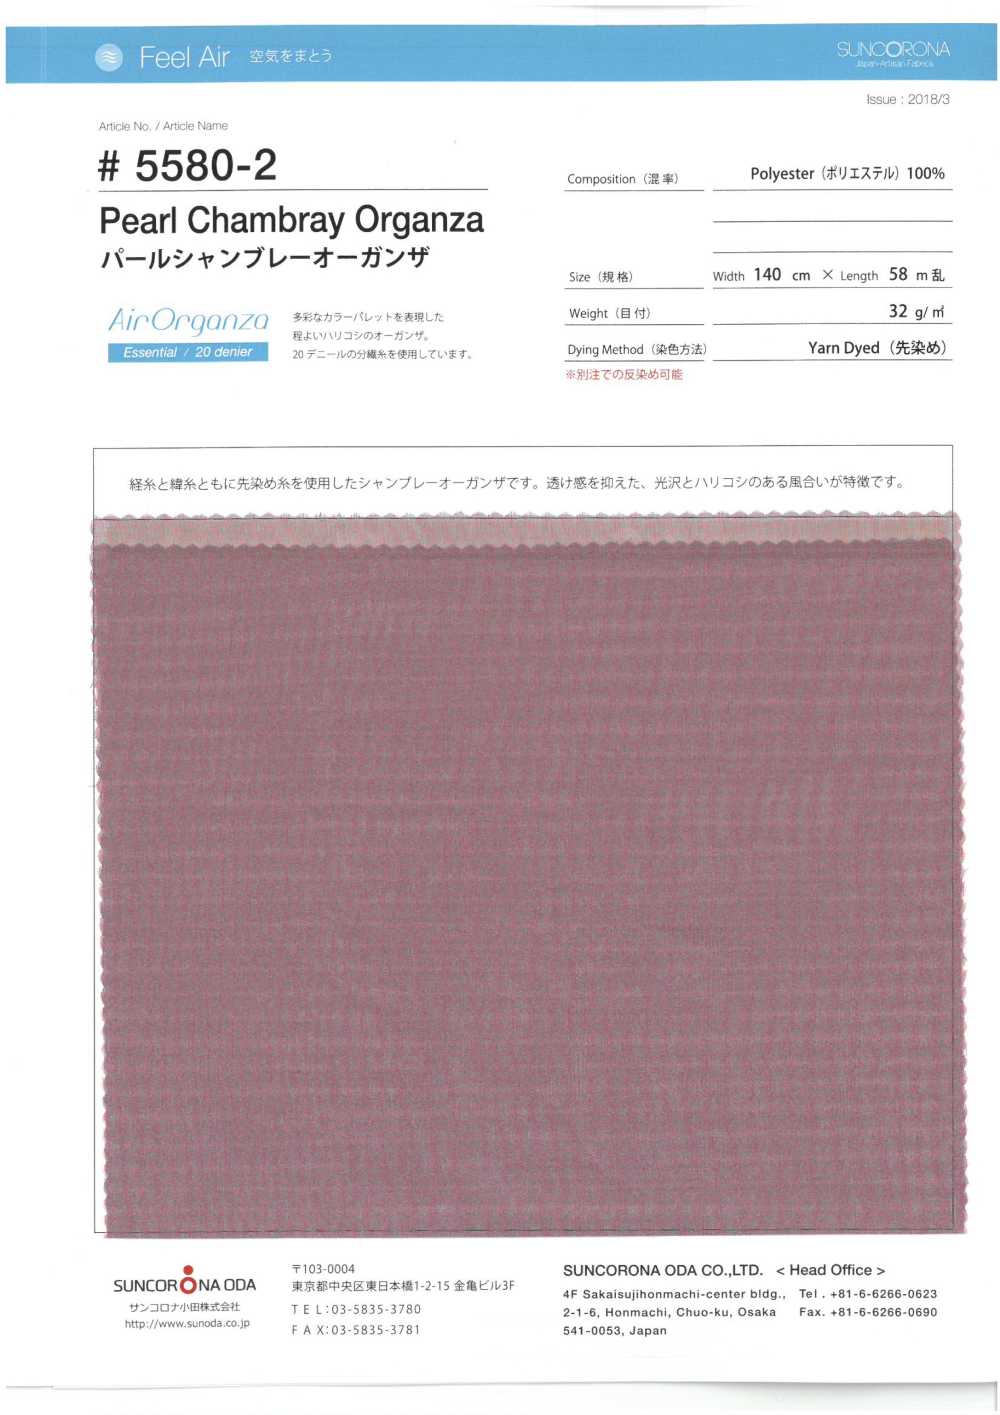 5580-2 Garngefärbte Perlen-Organdy[Textilgewebe] Suncorona Oda